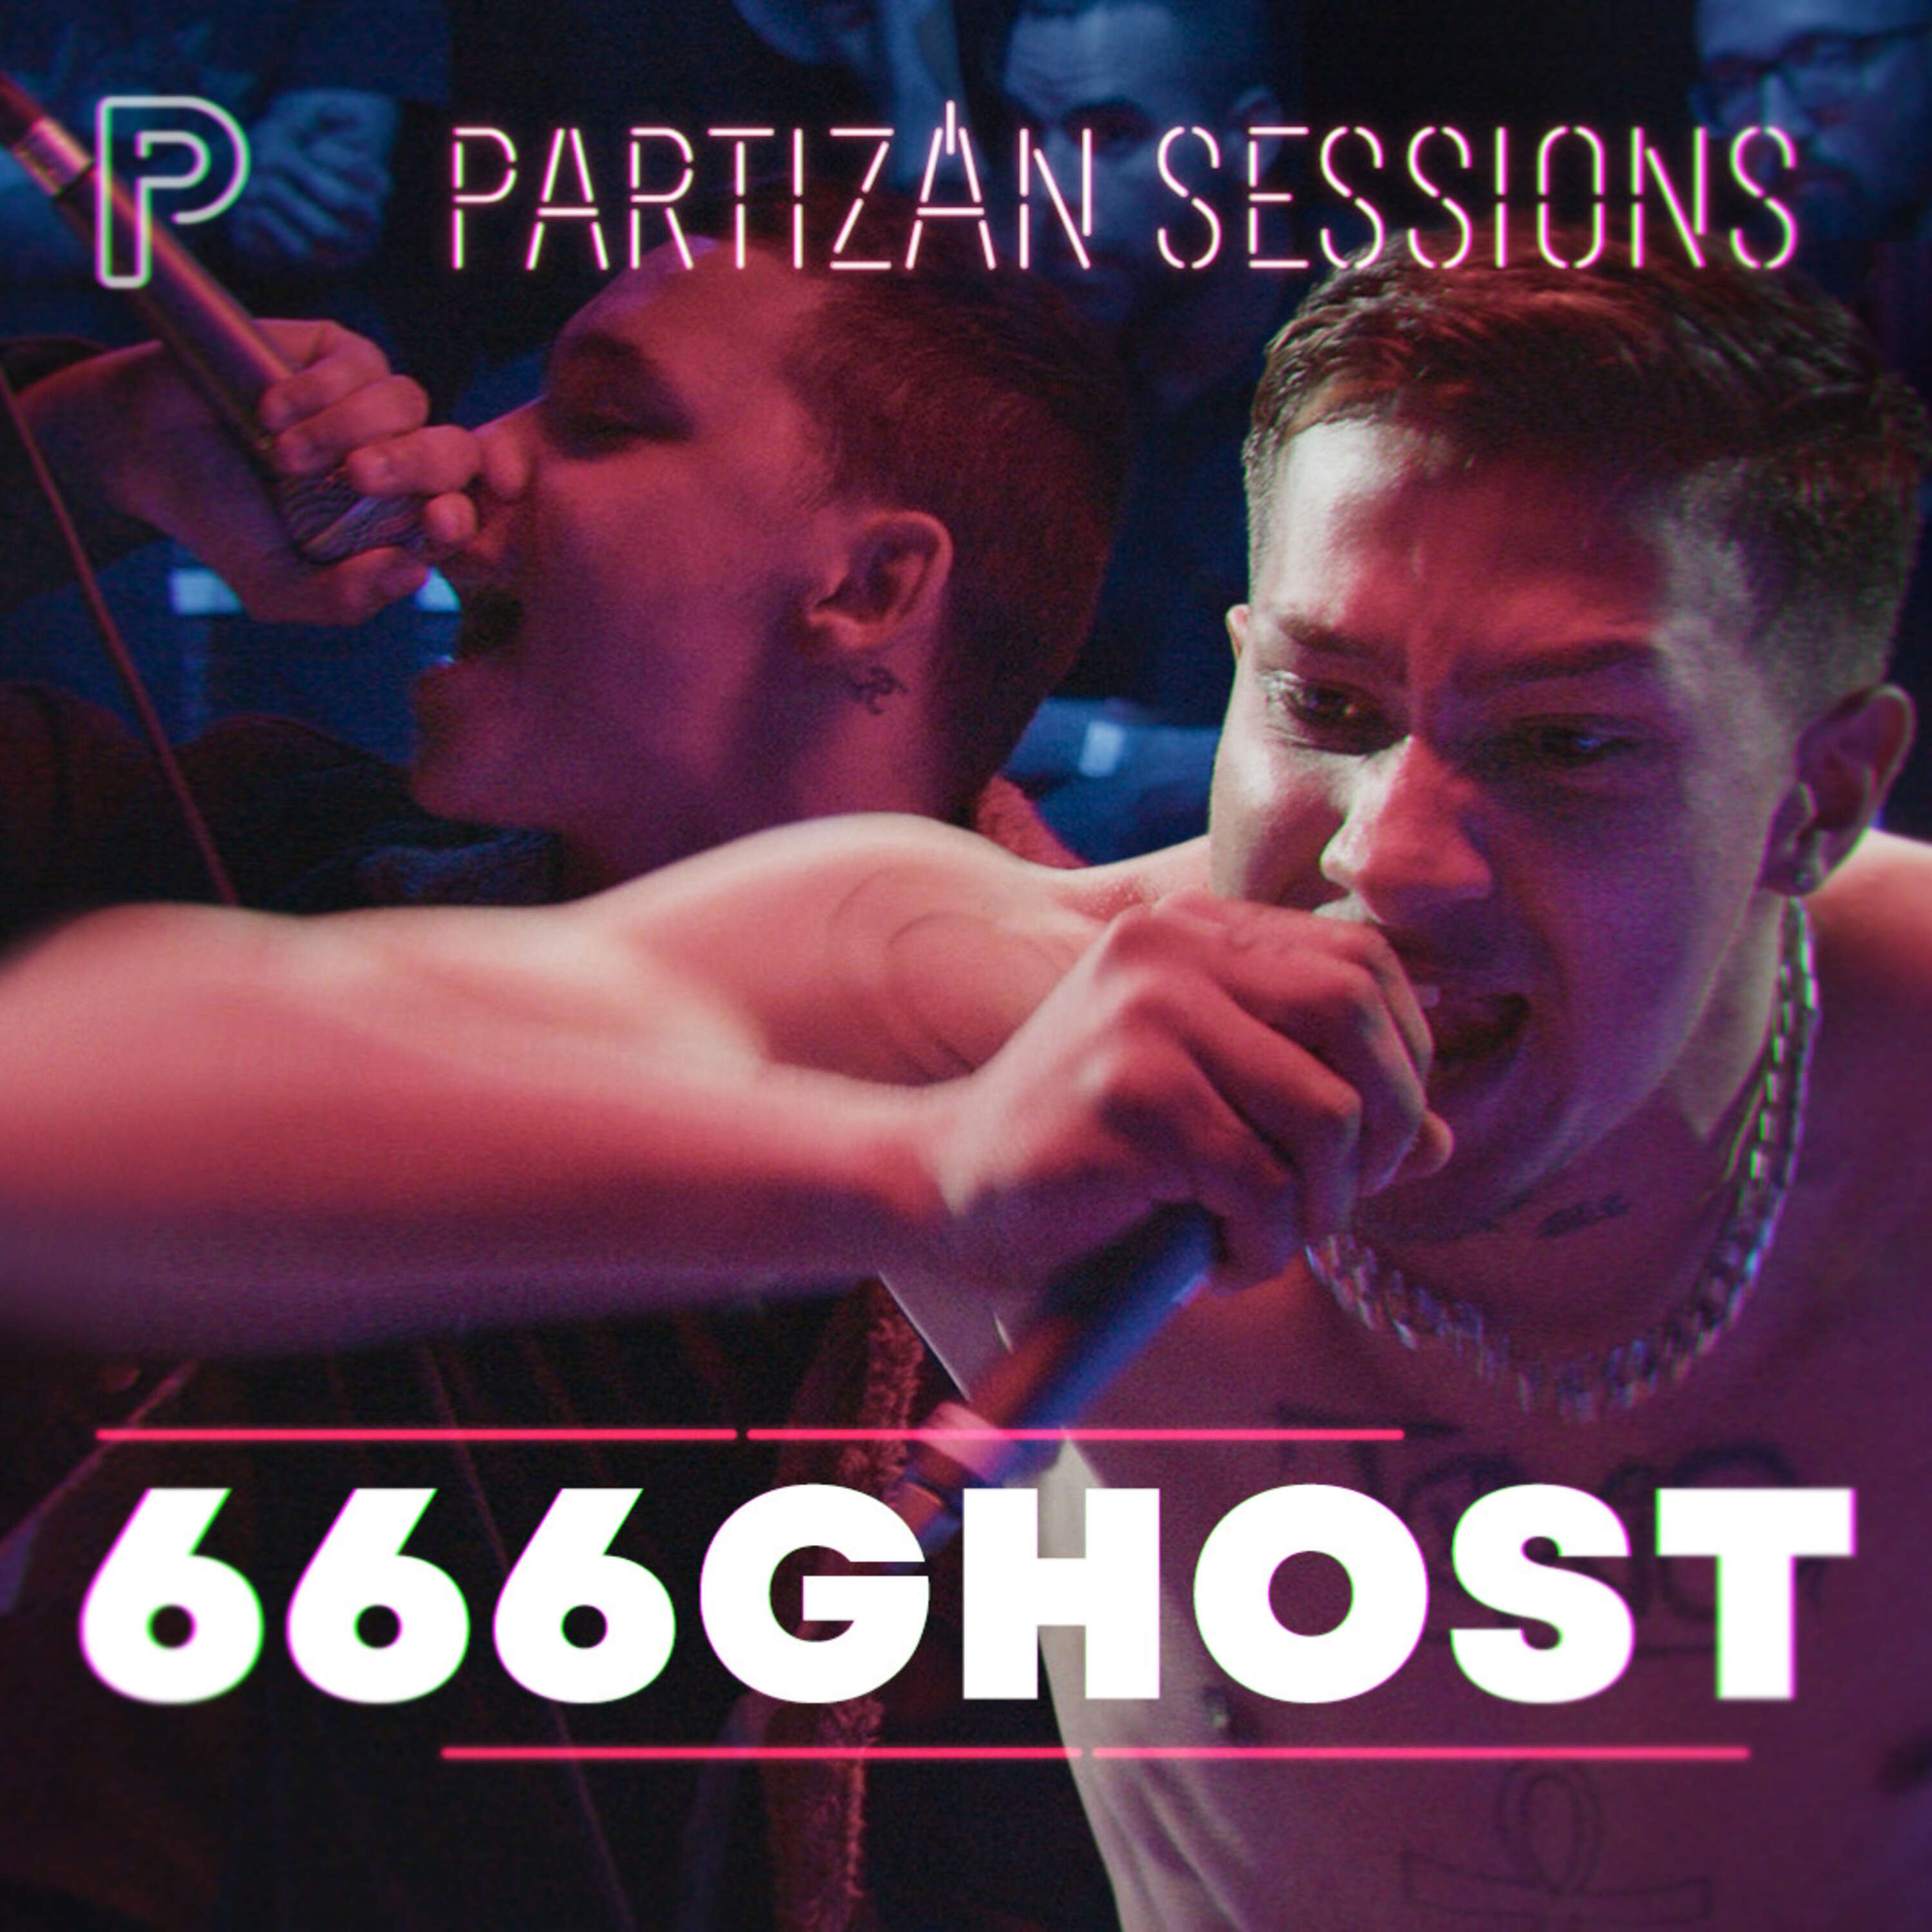 666GHOST - Kábszer | Partizán Sessions